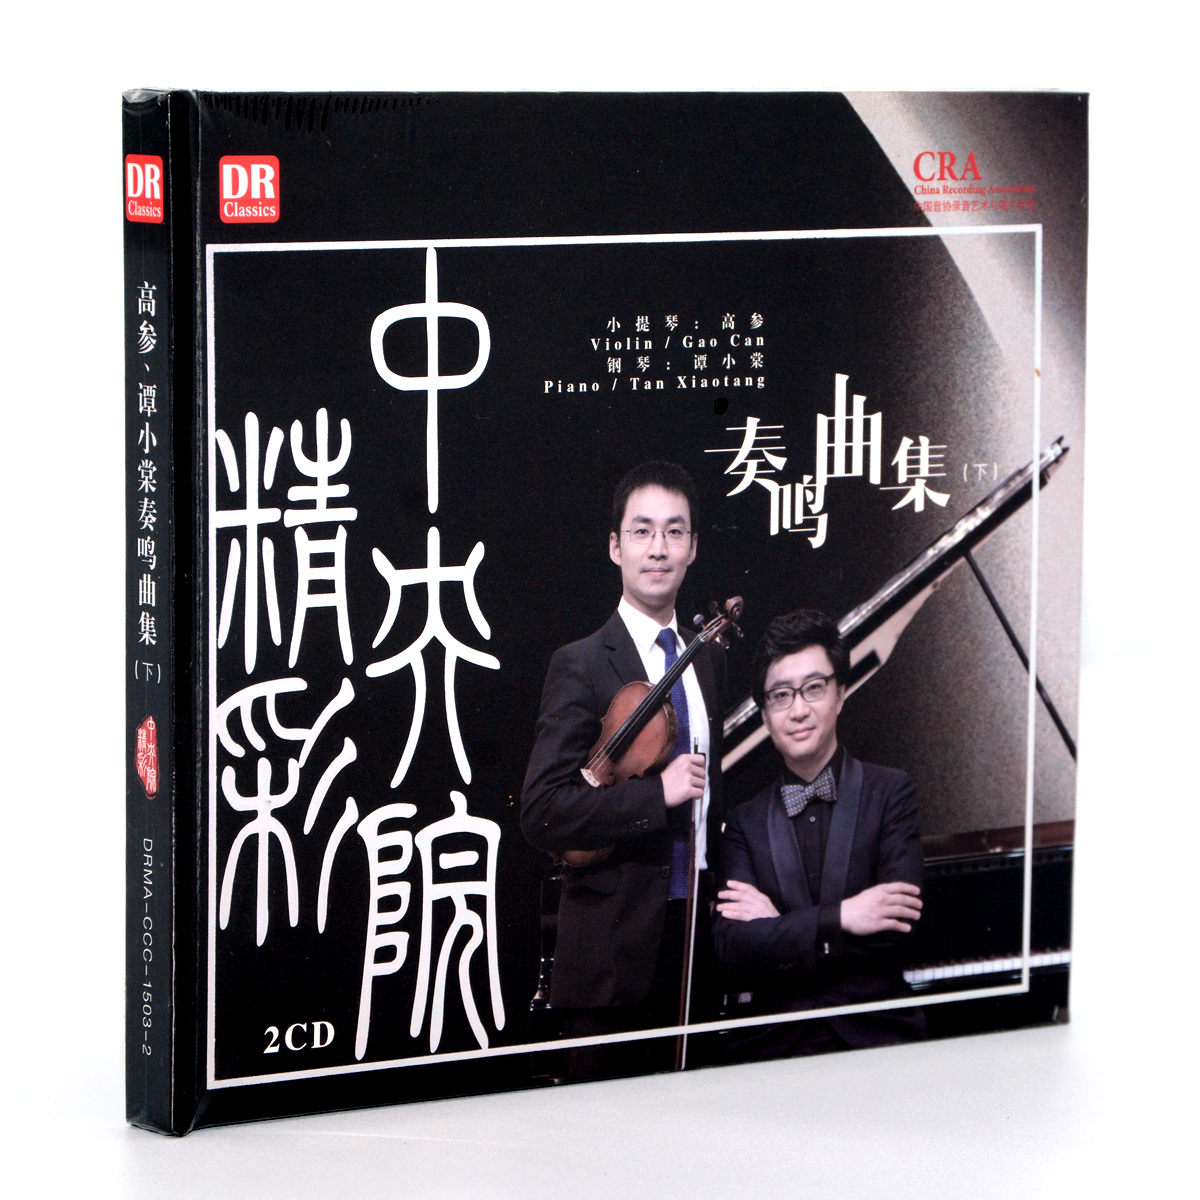 正版发烧CD碟 小提琴钢琴 高参谭小棠 奏鸣曲集下 古典音乐碟 2CD